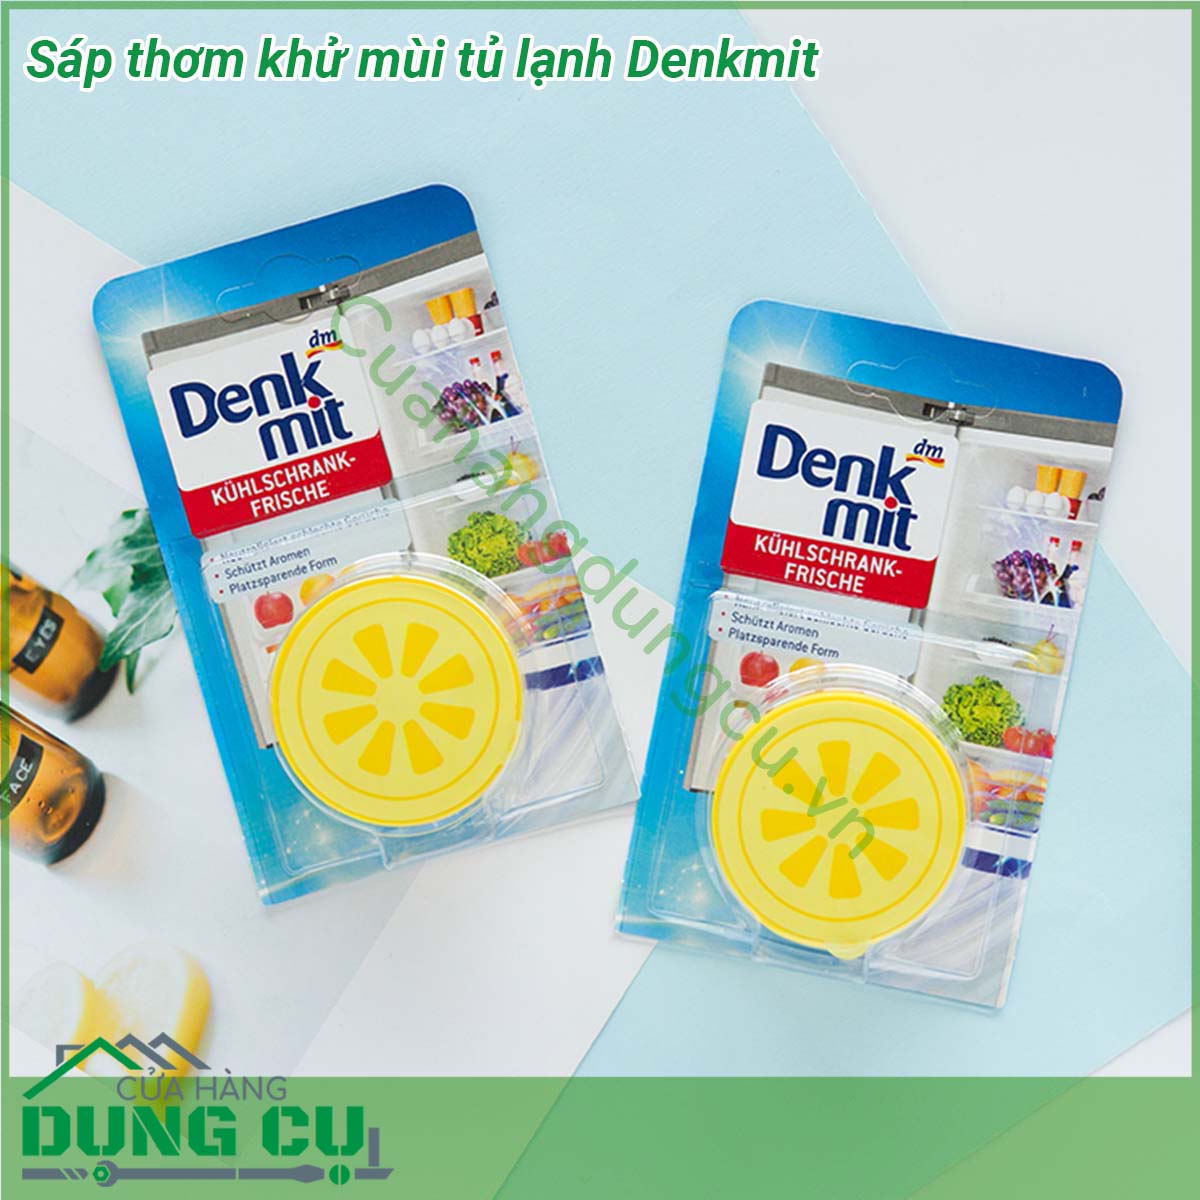 Sáp thơm khử mùi tủ lạnh Denkmit được thiết kế rất đơn giản nhỏ gọn  được sản xuất theo công nghệ hiện đại đến từ Đức chiết xuất từ rong biển - thành phần có sẵn trong tự nhiên có tác dụng trung hòa các loại mùi hôi khó chịu trong tủ lạnh  